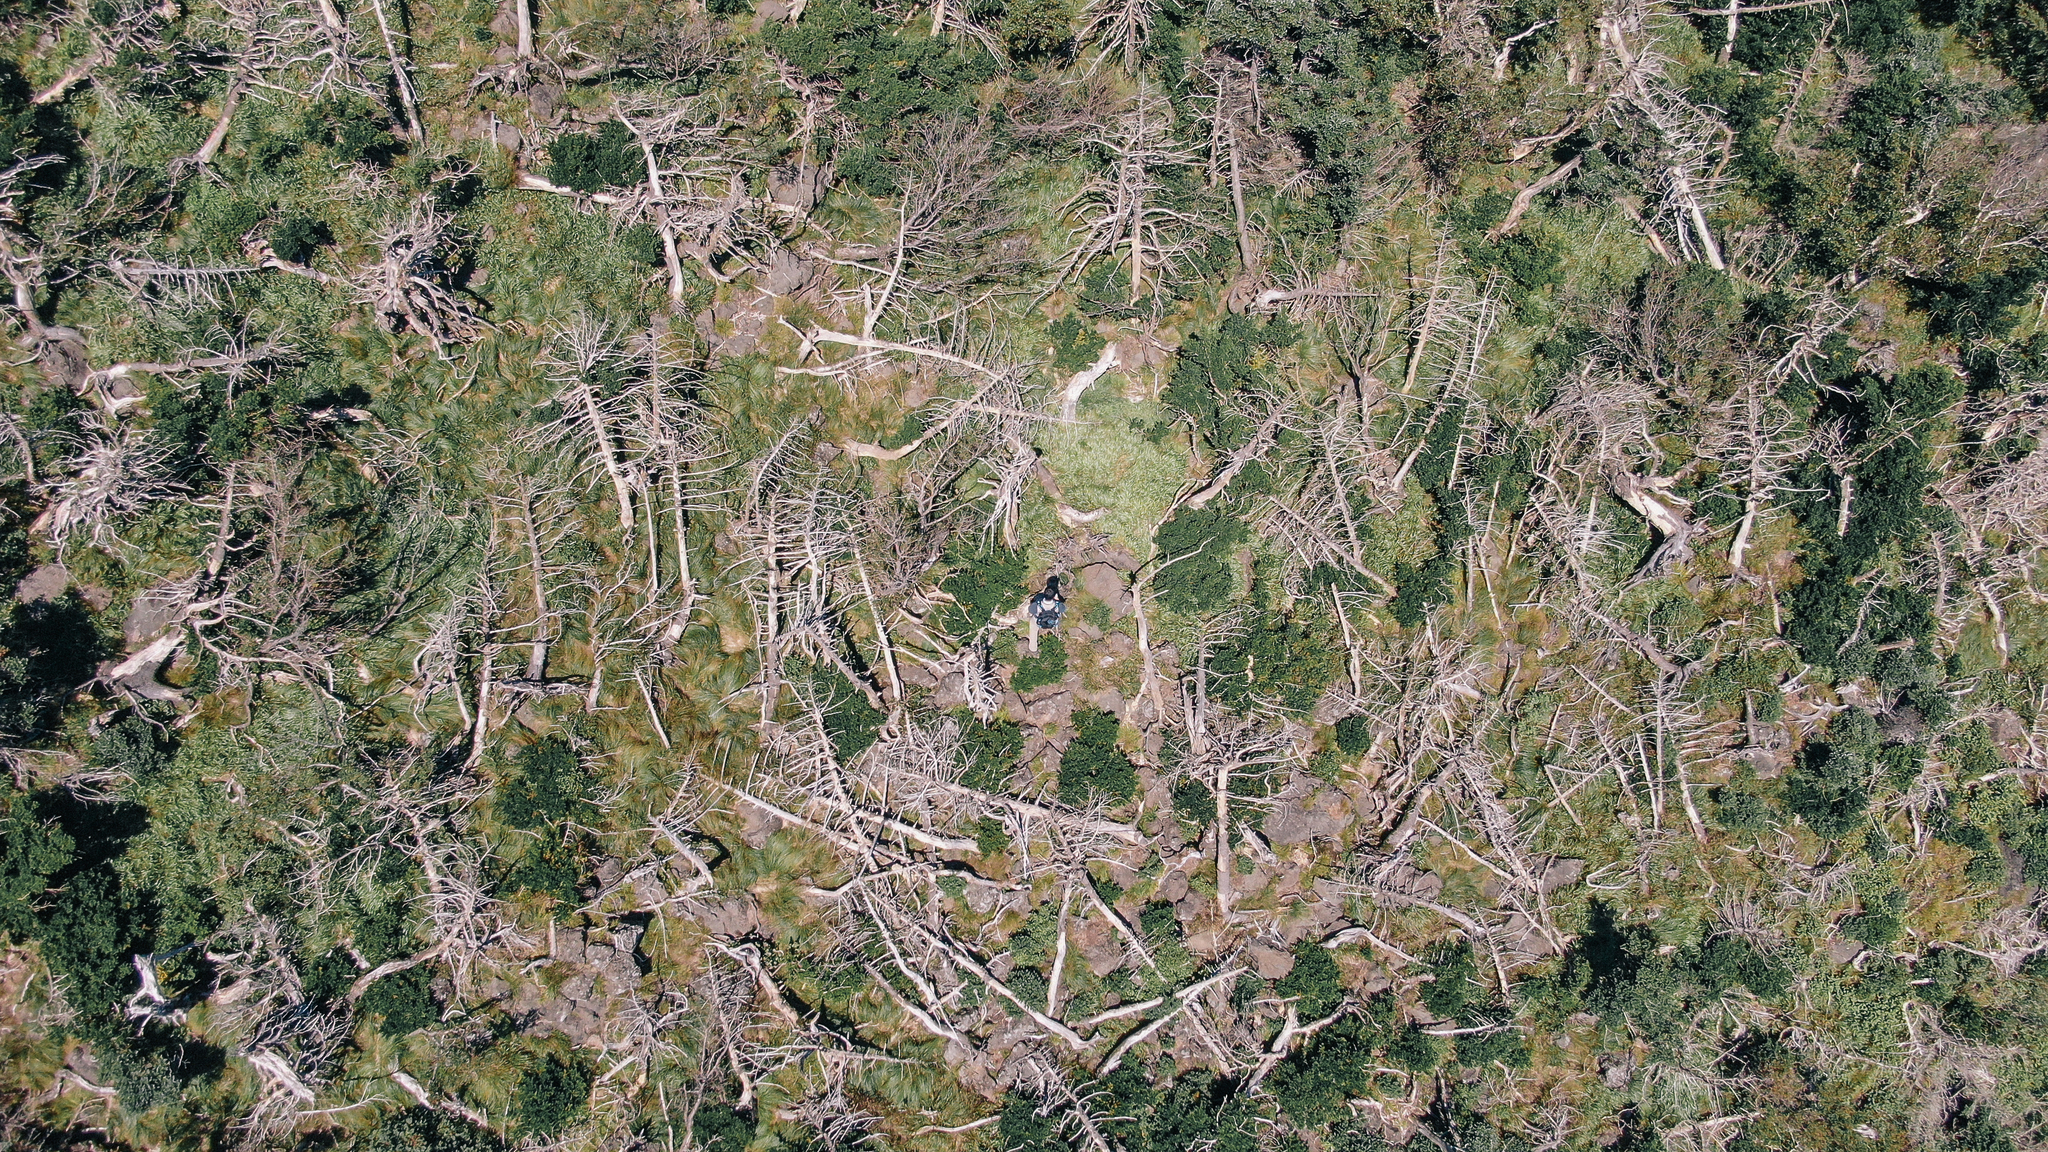 한라산 성판악 등산로 주변 구상나무 집단 고사 현장. 기후변화의 영향으로 구상나무들이 처참하게 쓰러져 있다. 조현우 사진작가